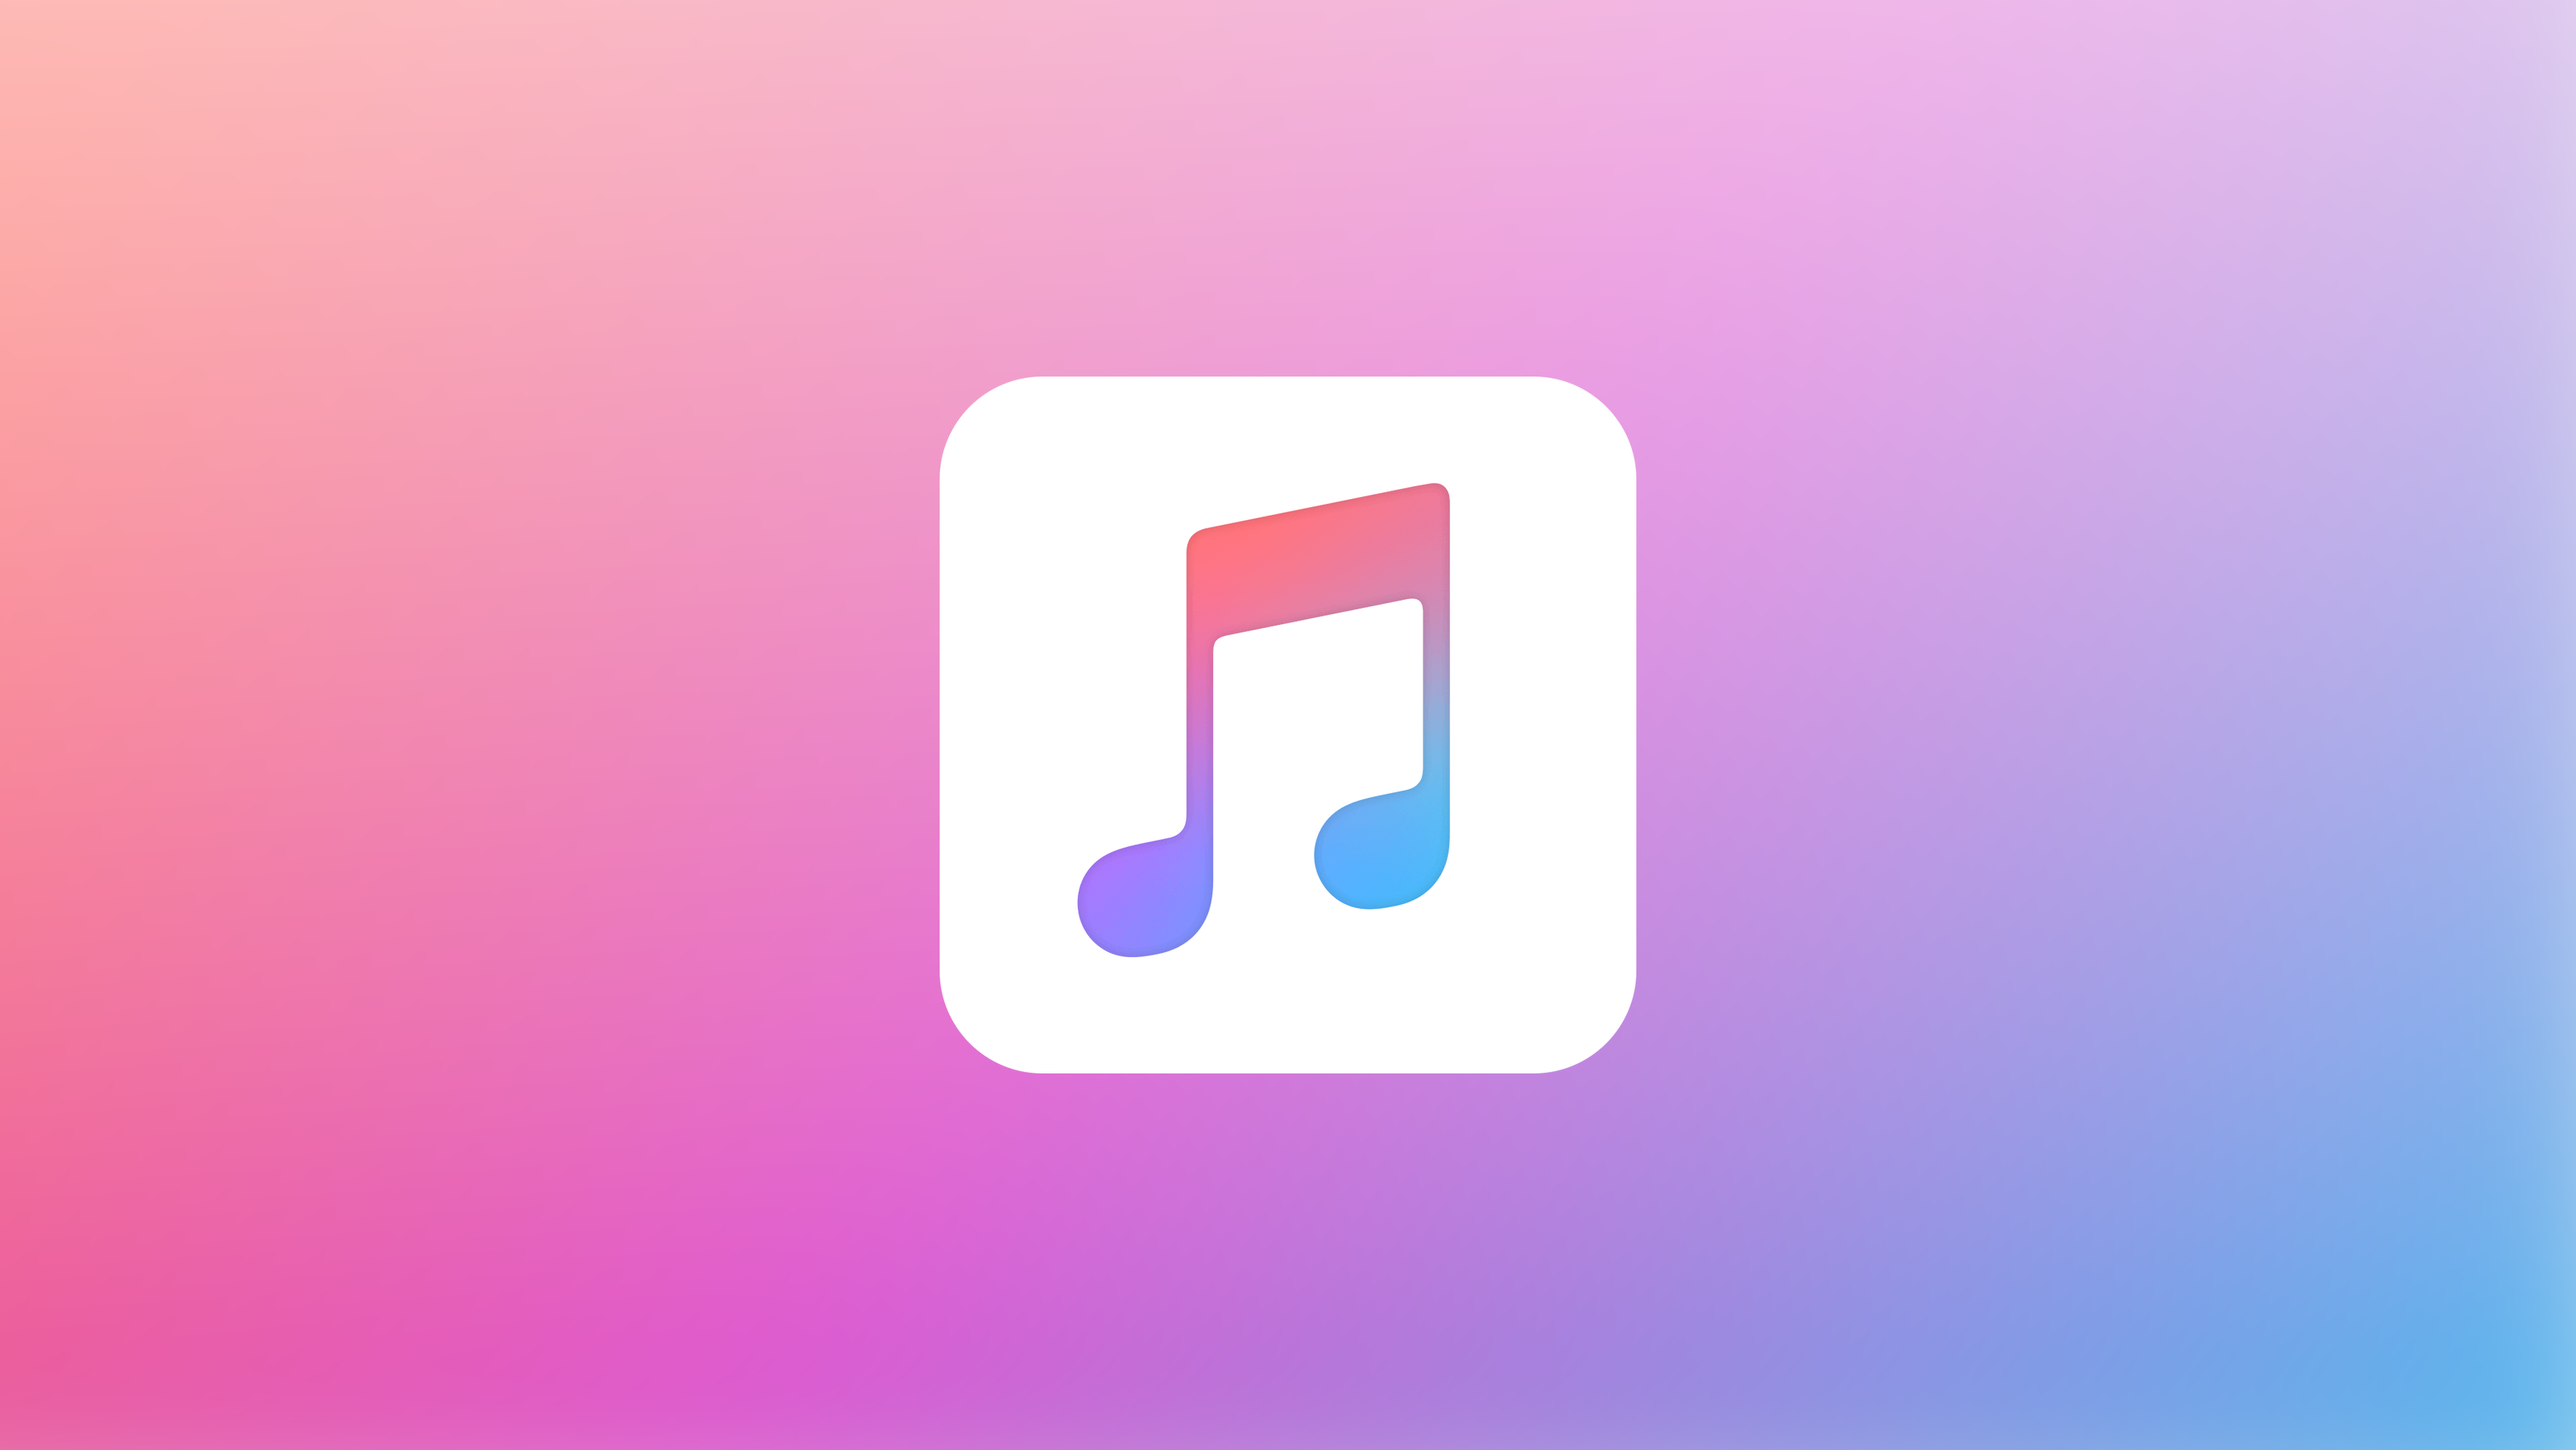 خدمات 25 فبراير 2021 نسخة مجانية من Apple موسيقى؟  يمكننا إخراج ذلك من رؤوسنا!